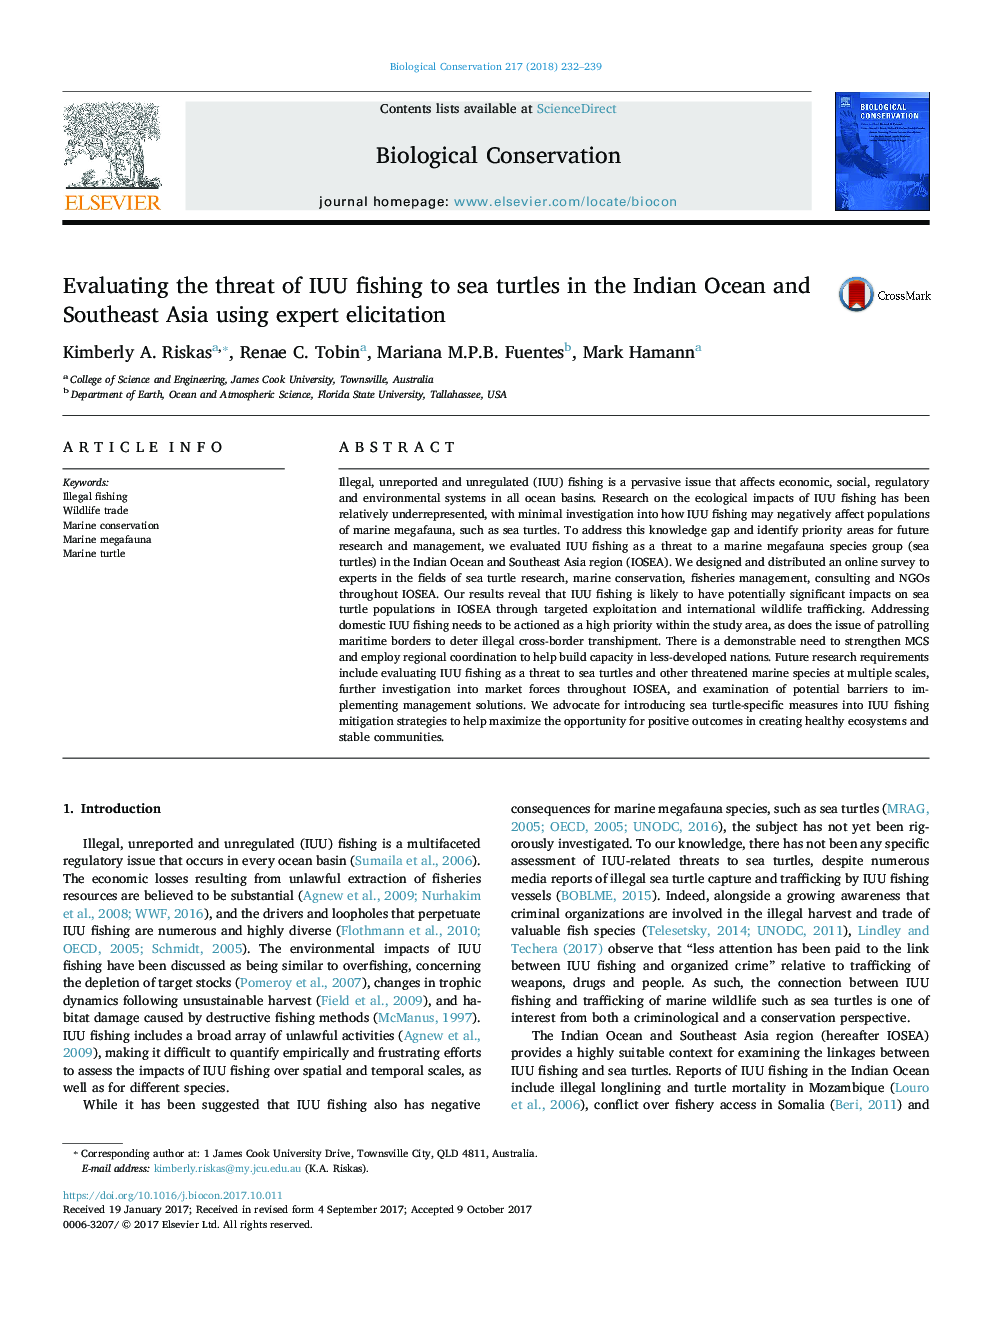 ارزیابی خطر ابتلا به ماهیگیری ناحیه ای غیر از ماهی در لاک پشت های دریایی در اقیانوس هند و آسیای جنوب شرقی با استفاده از تحقیقات تخصصی 